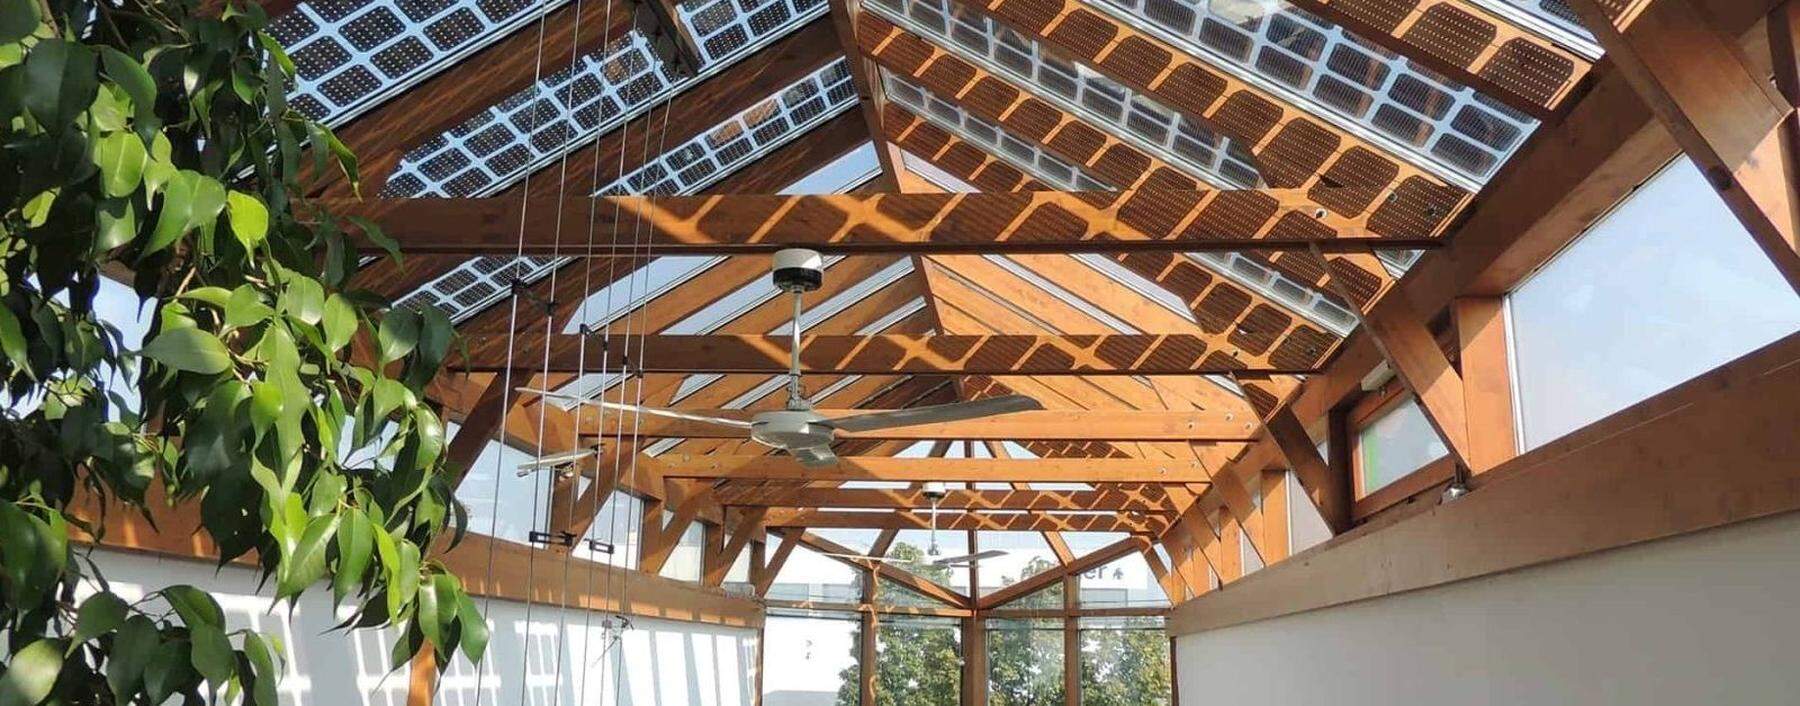 Energiegewinnung mit Glas: als Balkongeländer, Fassadenelement oder halbdurchlässiges Dach.